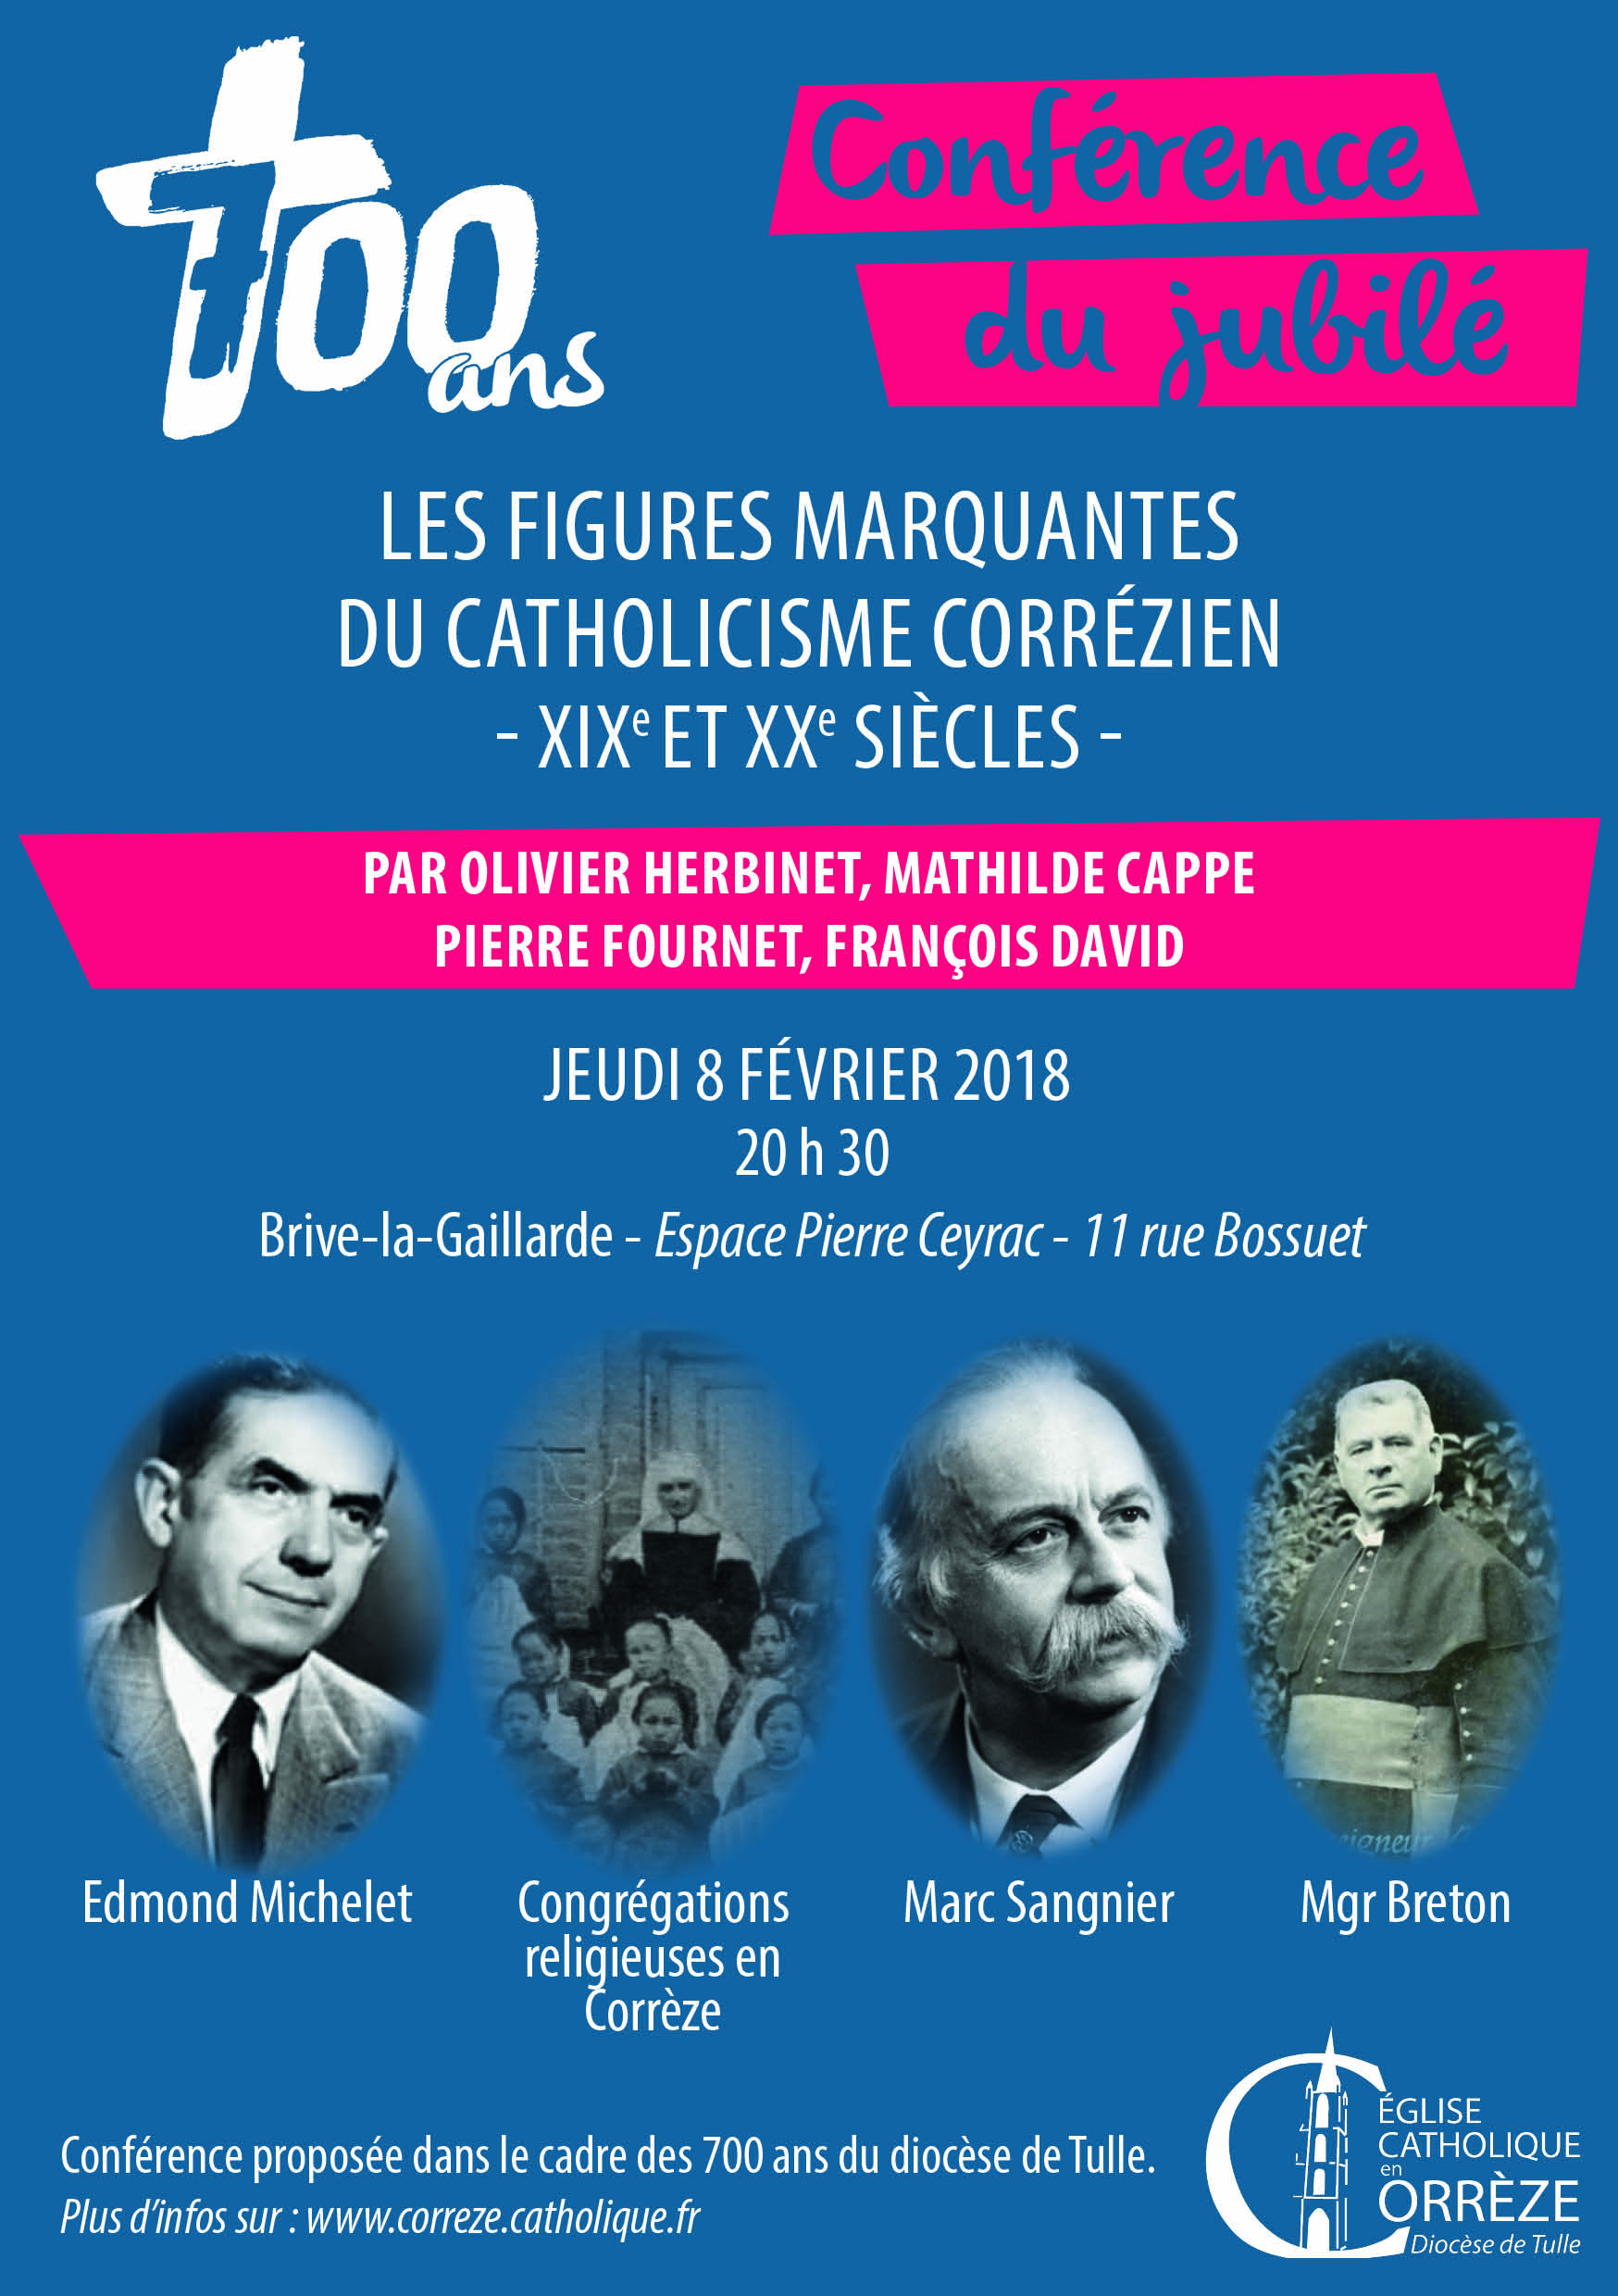 Conférence "les figures marquantes du catholicisme corrézien"